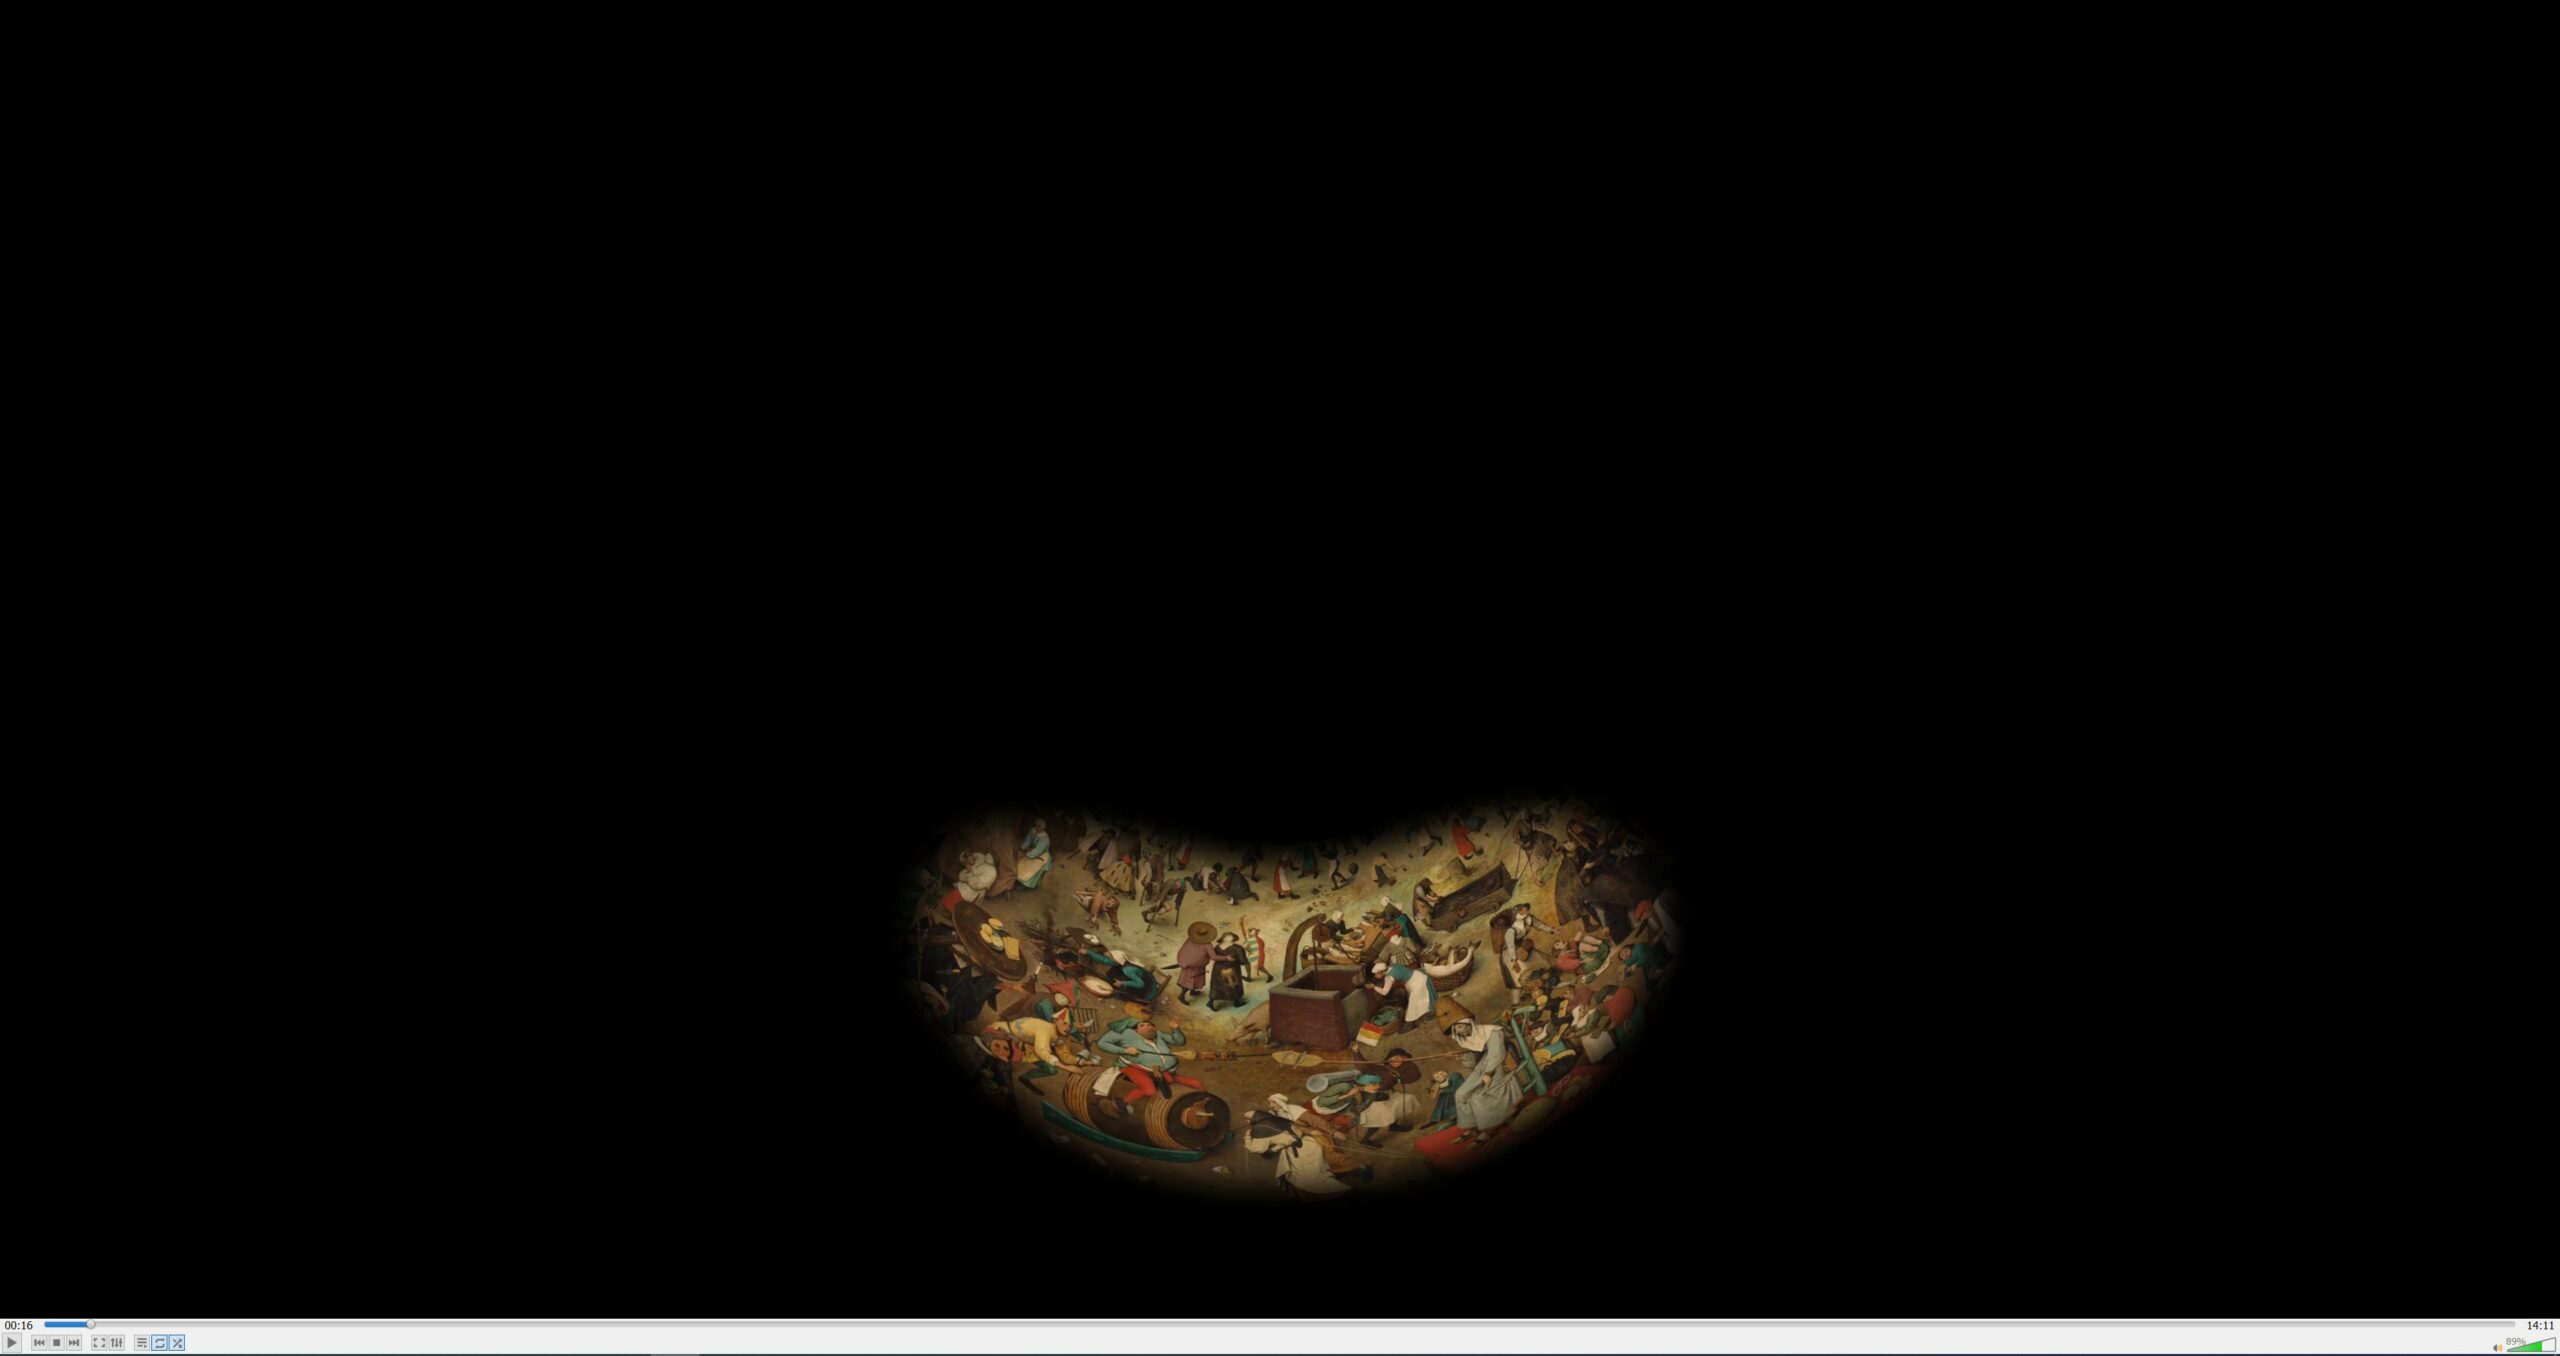 Vorschau eines 2D Bildes in der 360°-Ansicht der Kuppel - vorne